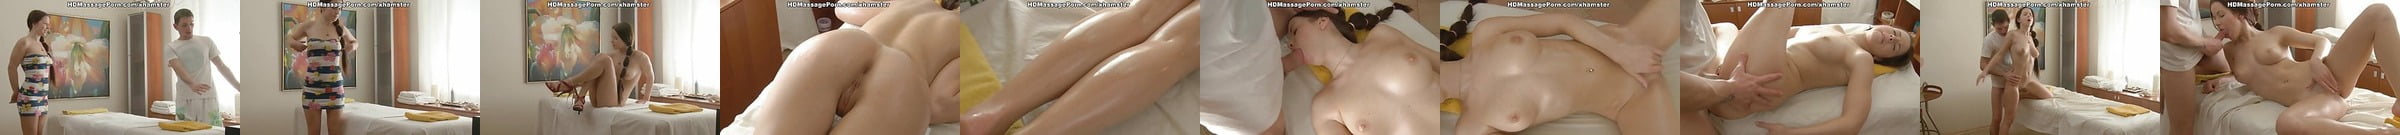 Die Bestbewerteten Porno Videos In Der Kategorie Massage